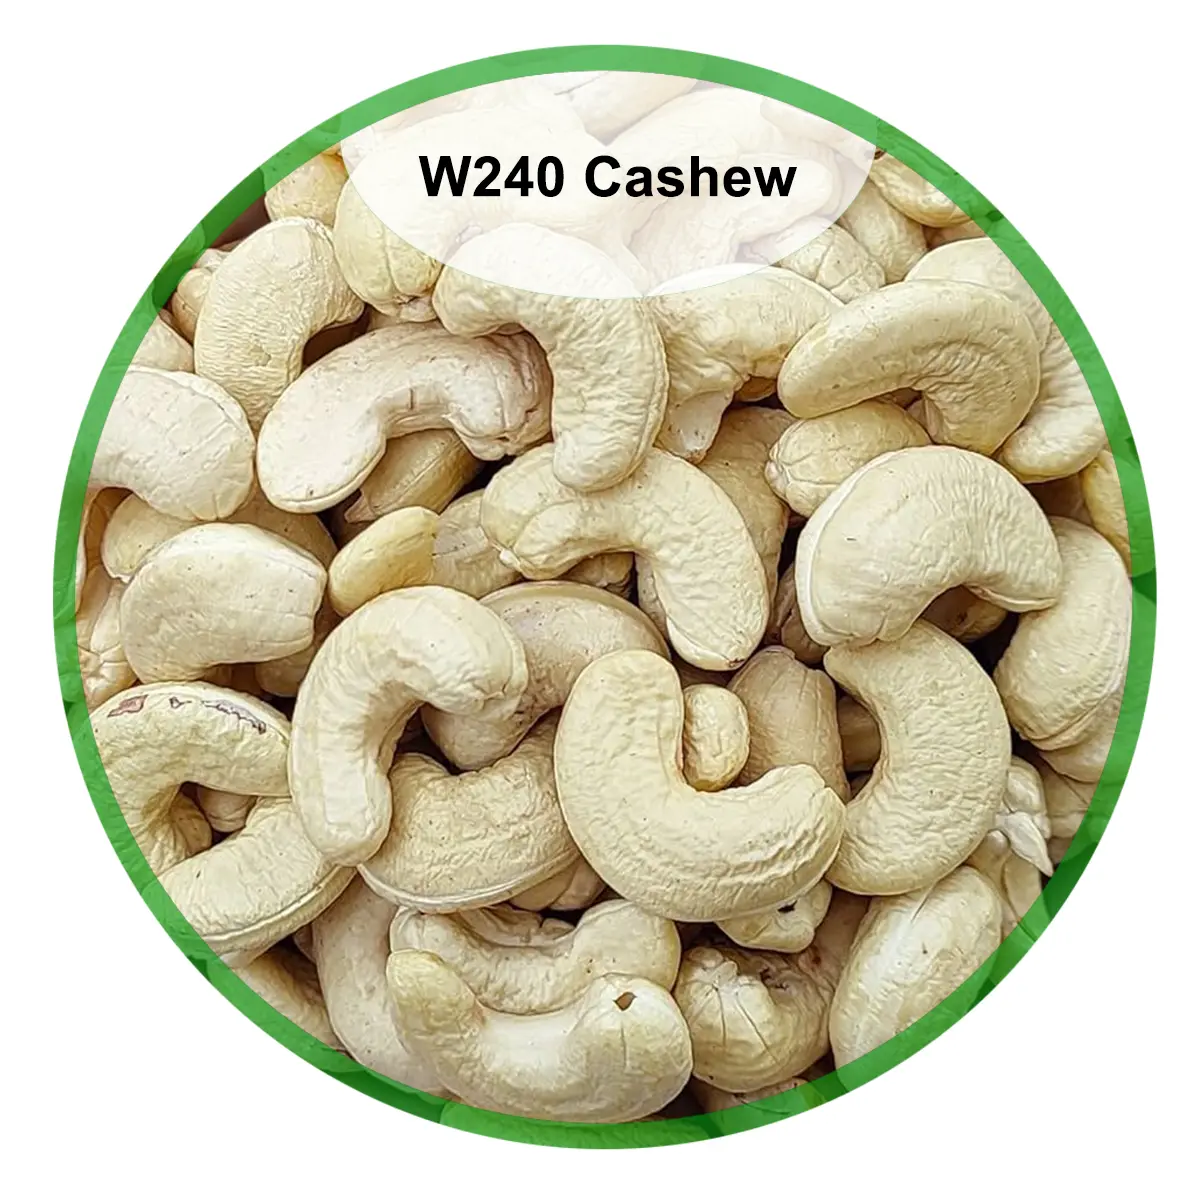 W240 Cashew